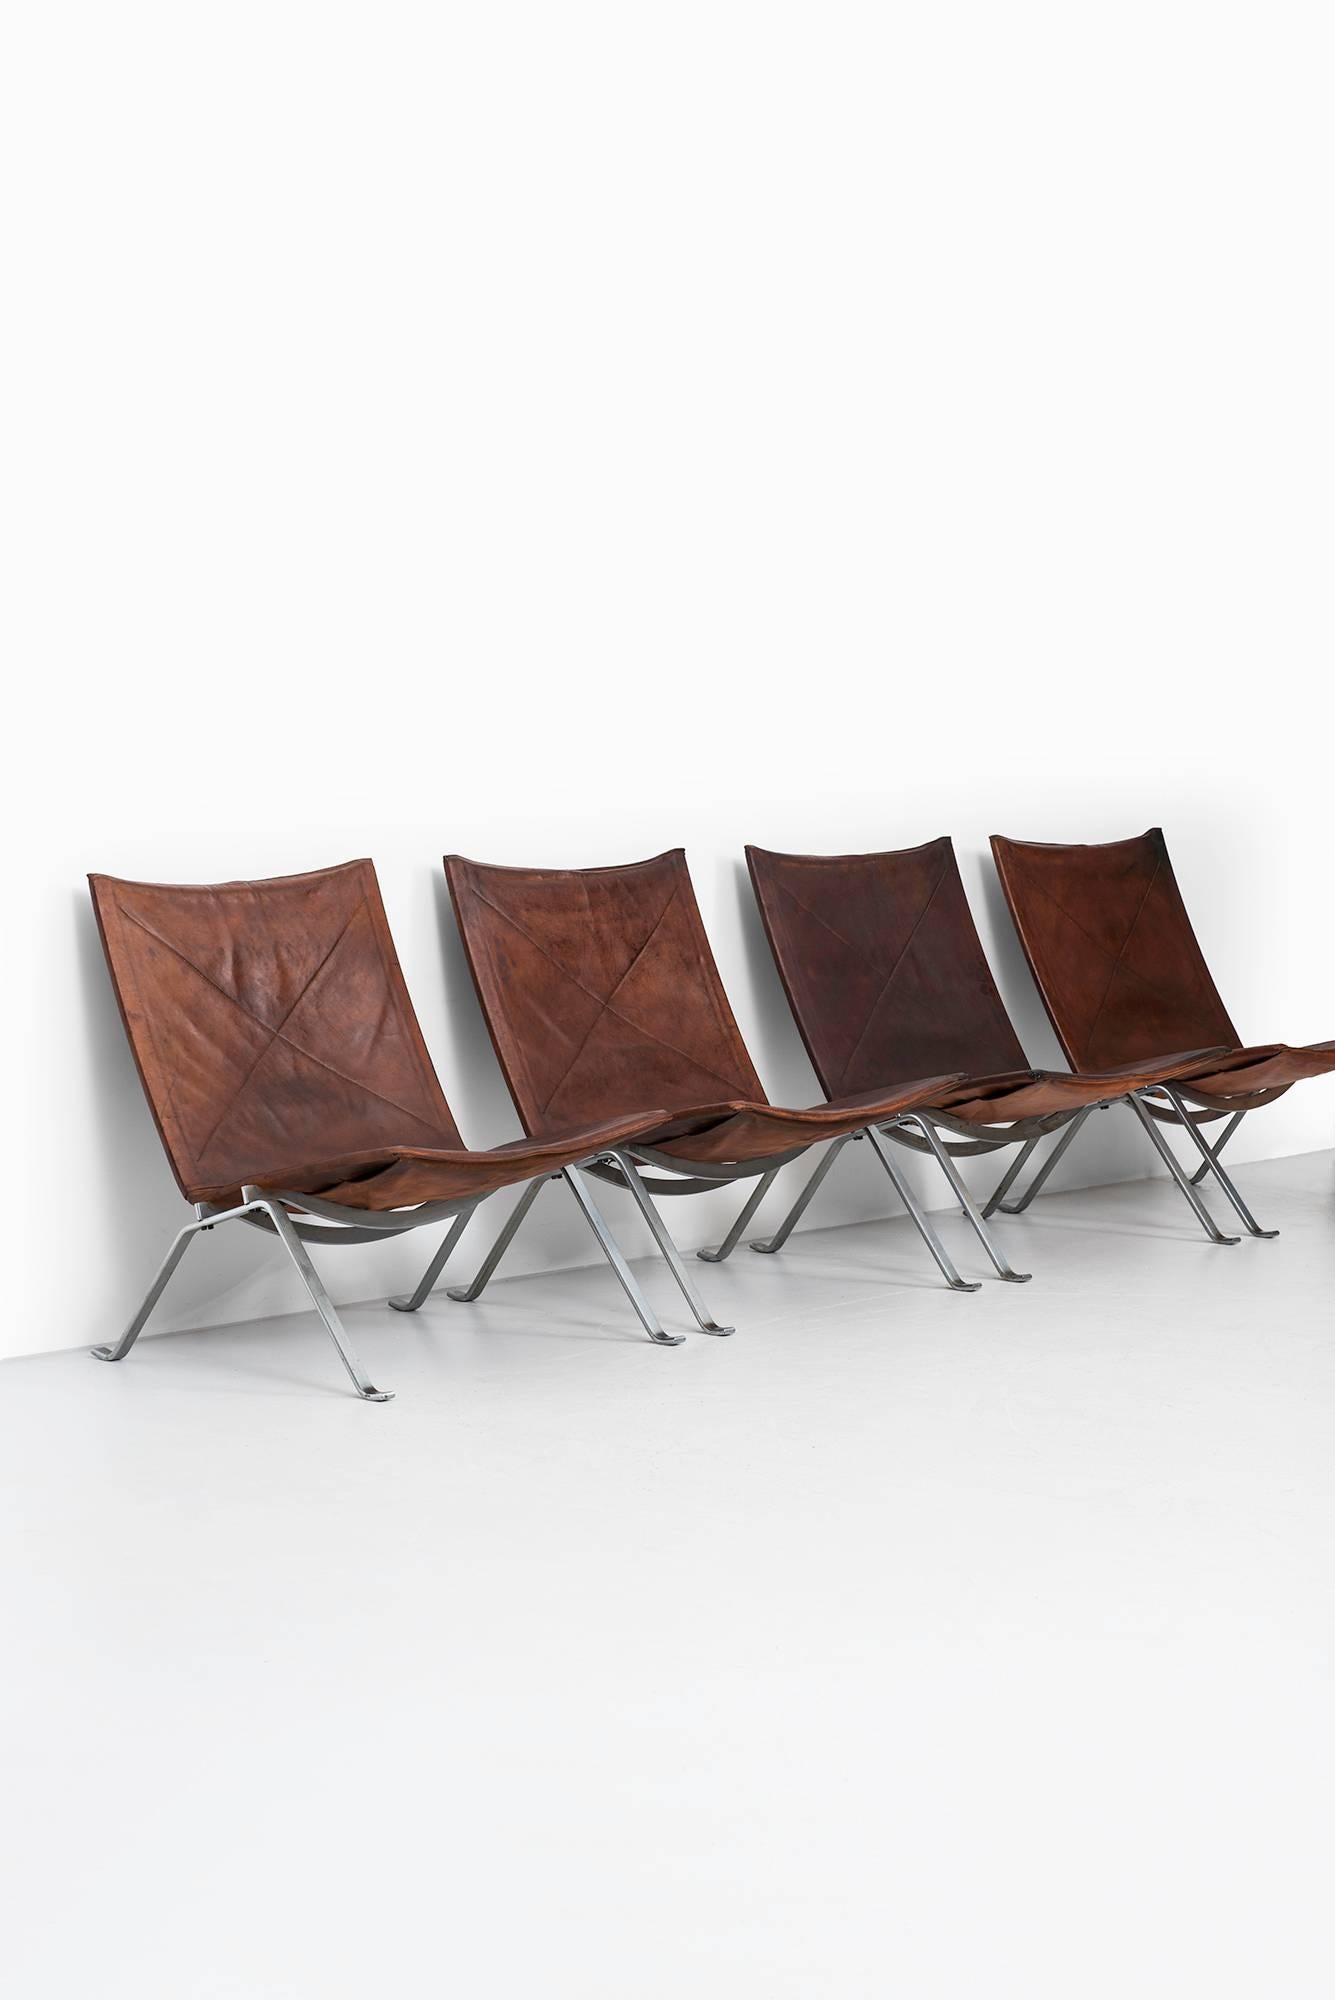 Rare set of four easy chairs model PK-22 designed by Poul Kjærholm. Produced by E. Kold Christensen in Denmark.